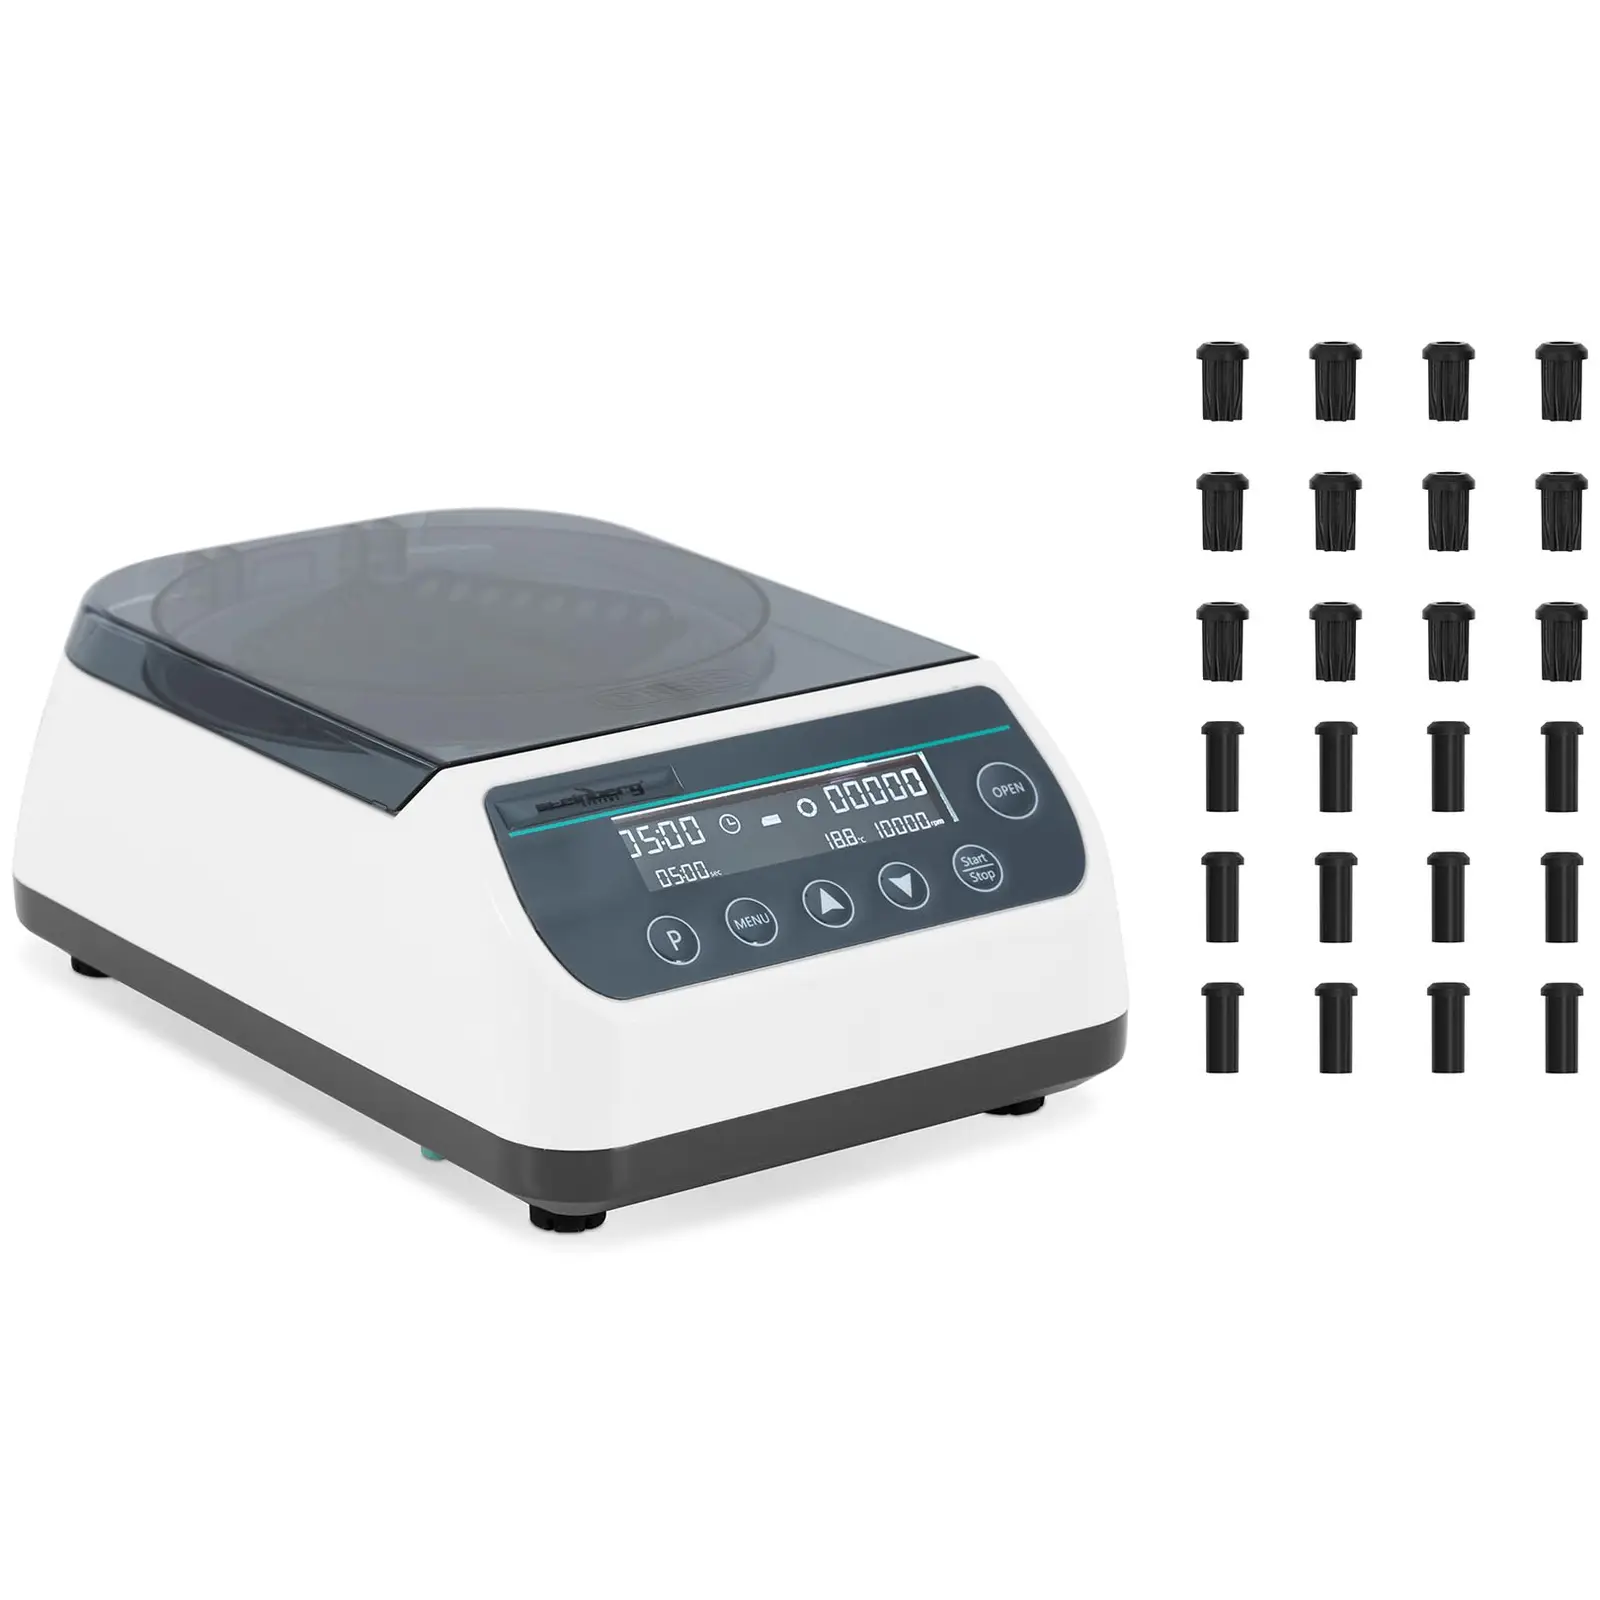 Tischzentrifuge - High Speed - 2-in-1-Rotor - 10 000 U/min - für 12 Röhrchen / 4 PCR-Streifen - RZB 6708 xg